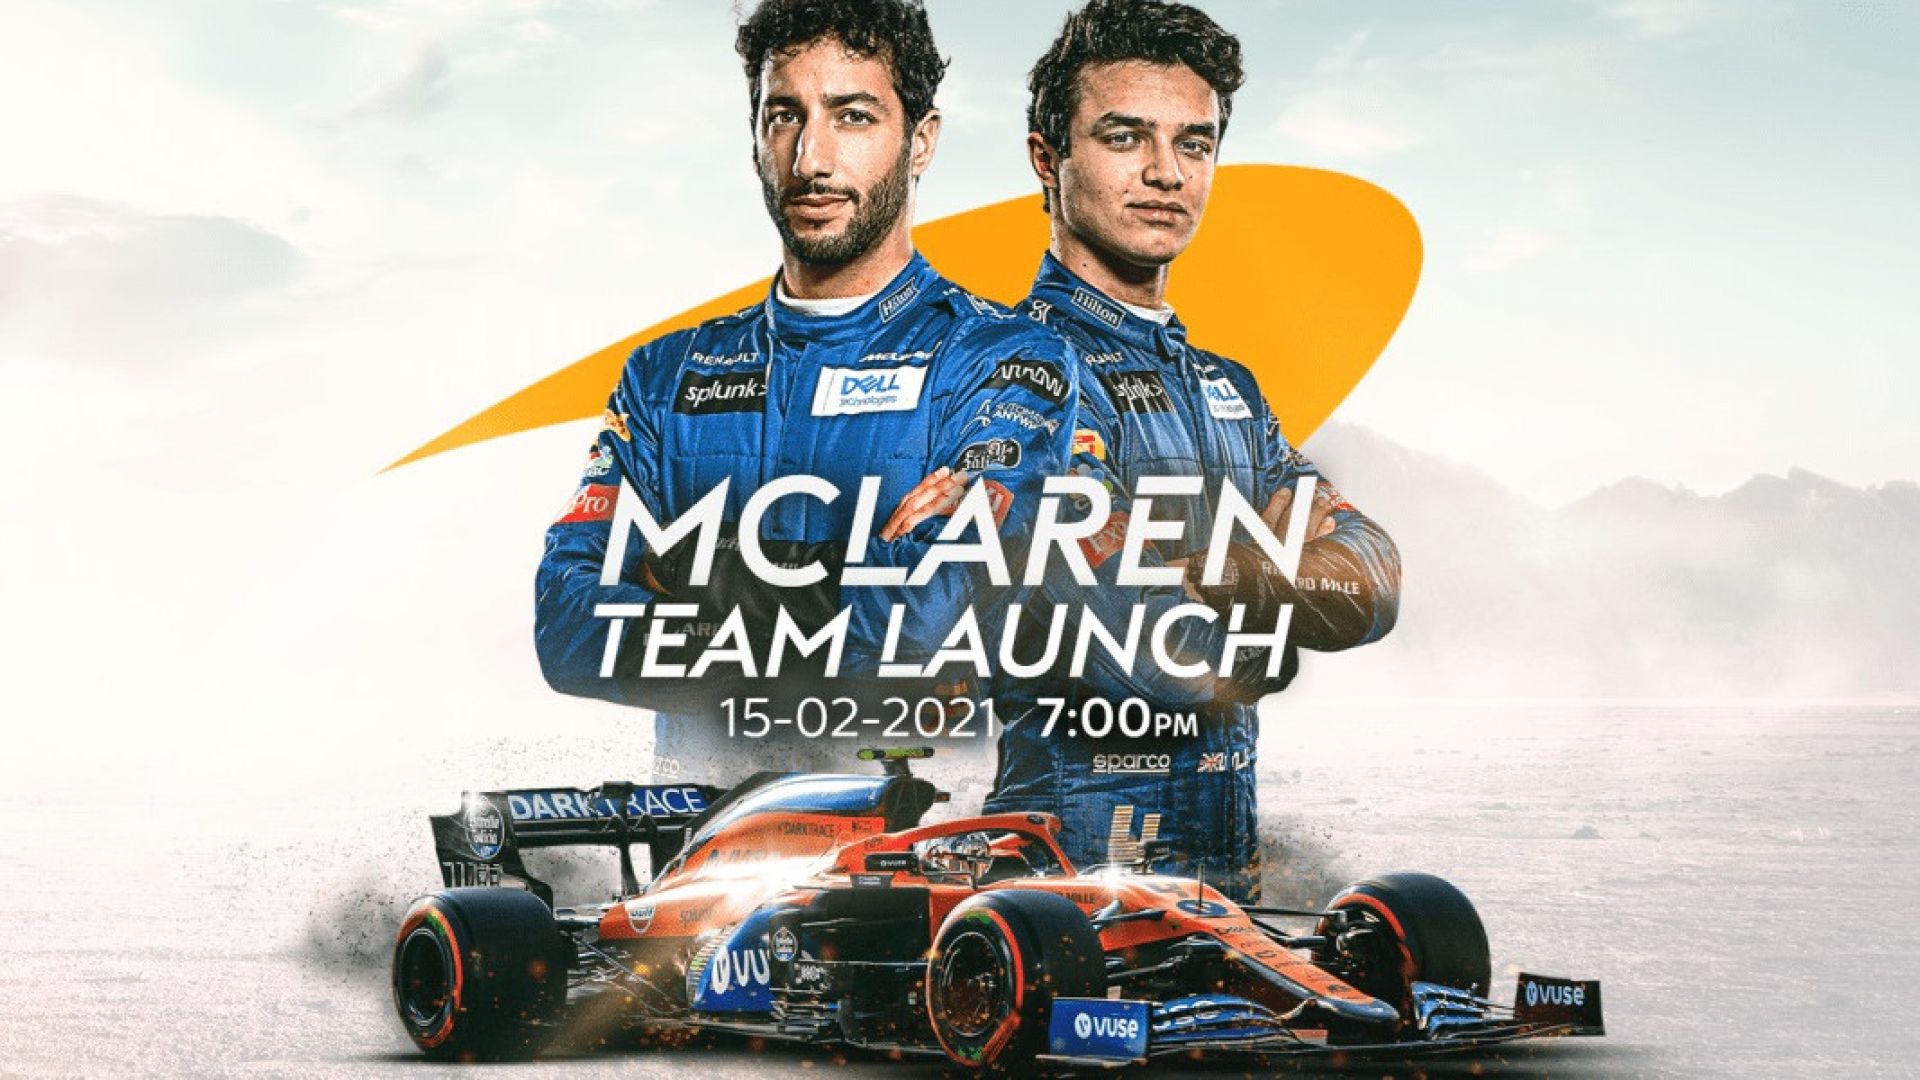 La presentazione del McLaren F1 Team di Ricciardo e Norris - MotorBox